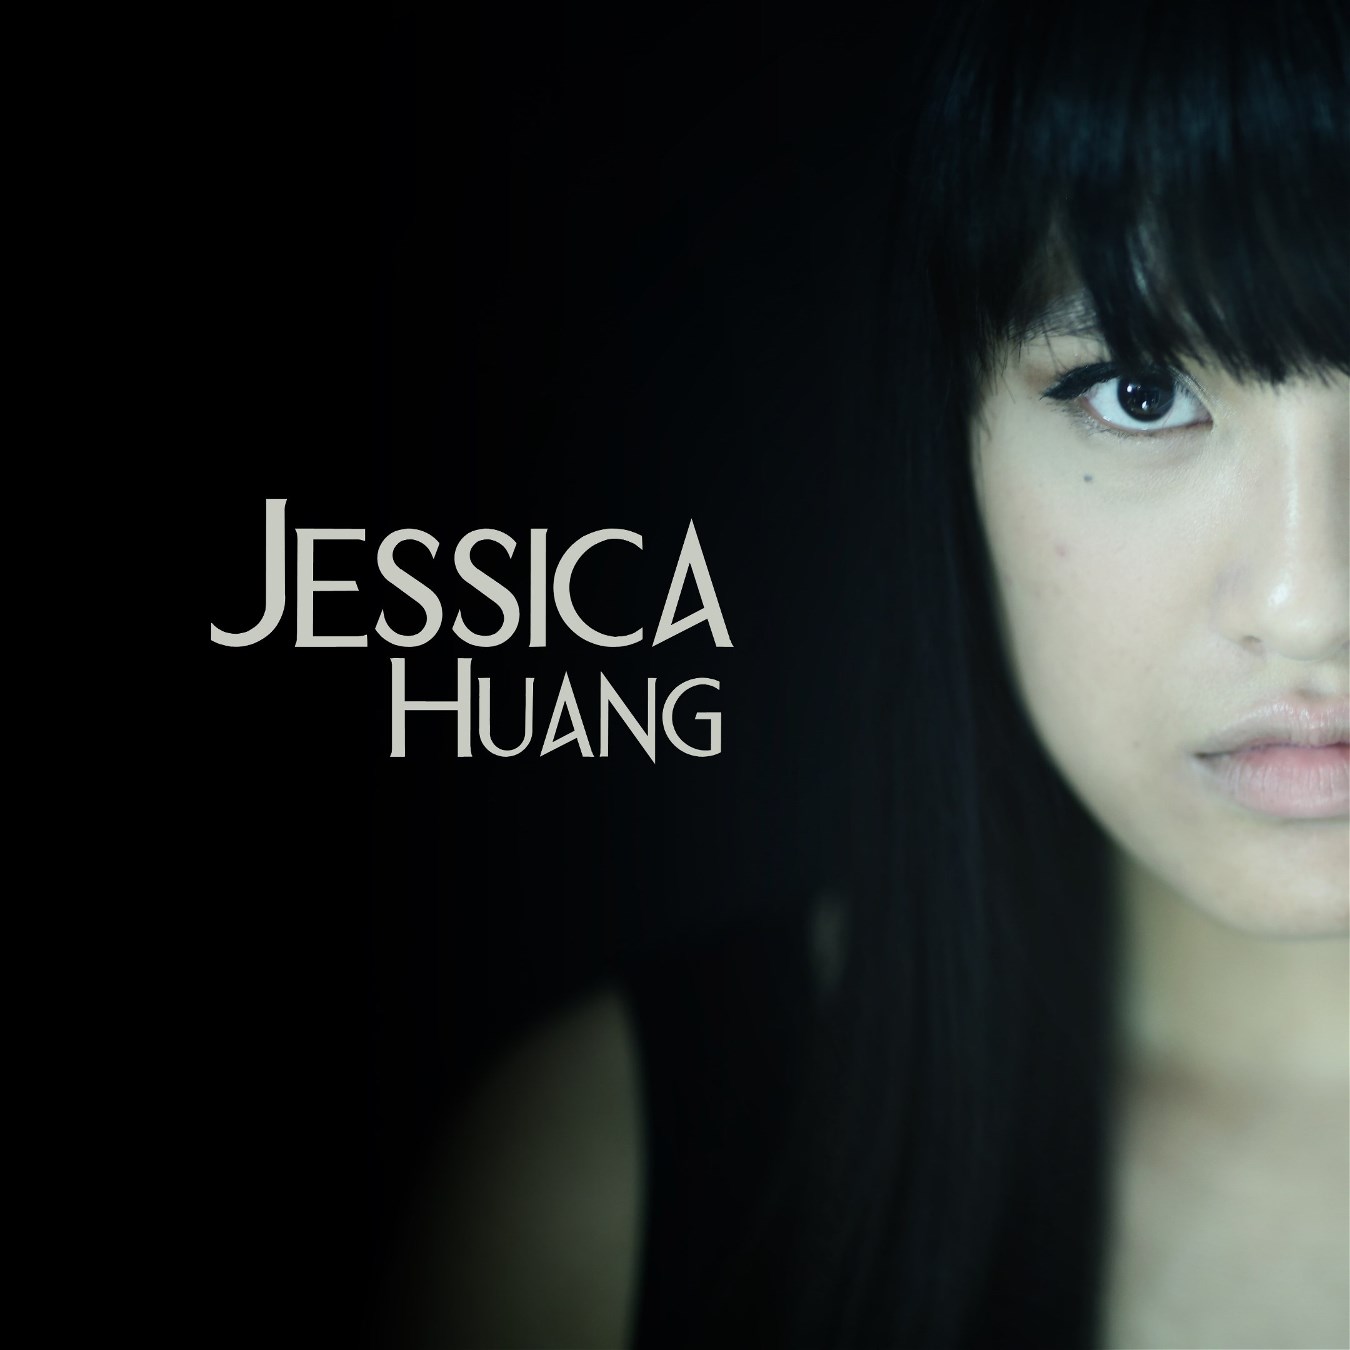 JESSICA HUANG